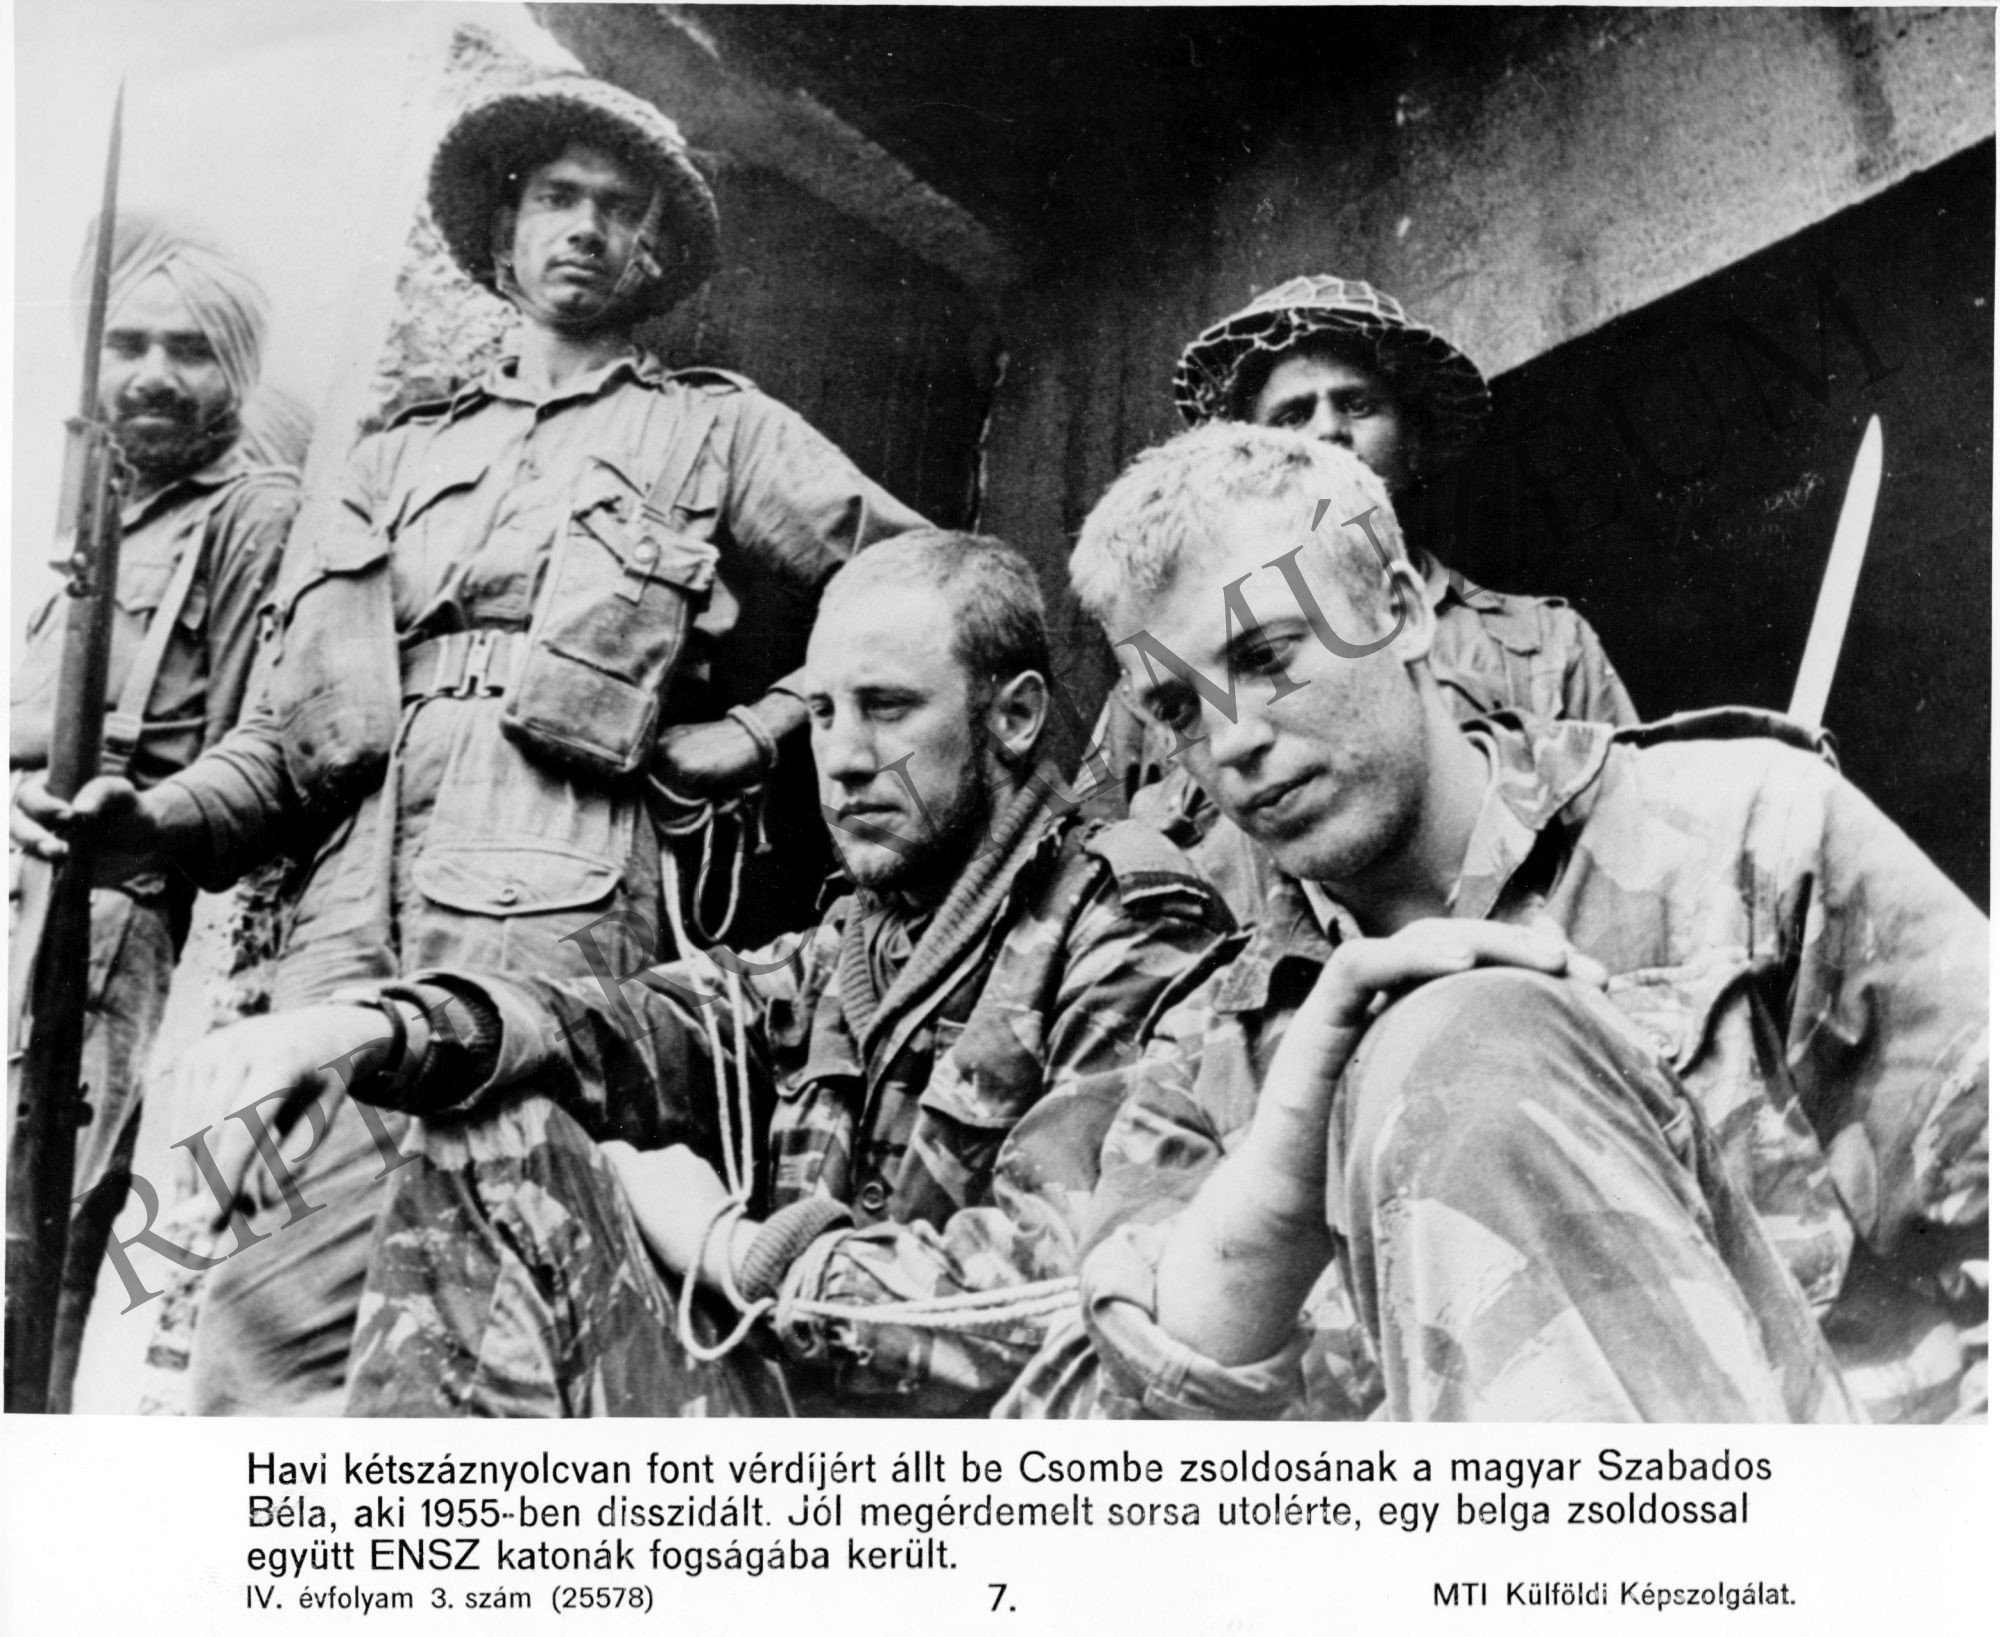 Magyar disszidens Csombe zsoldosaként az ENSZ katonák fogságában (Rippl-Rónai Múzeum CC BY-NC-SA)